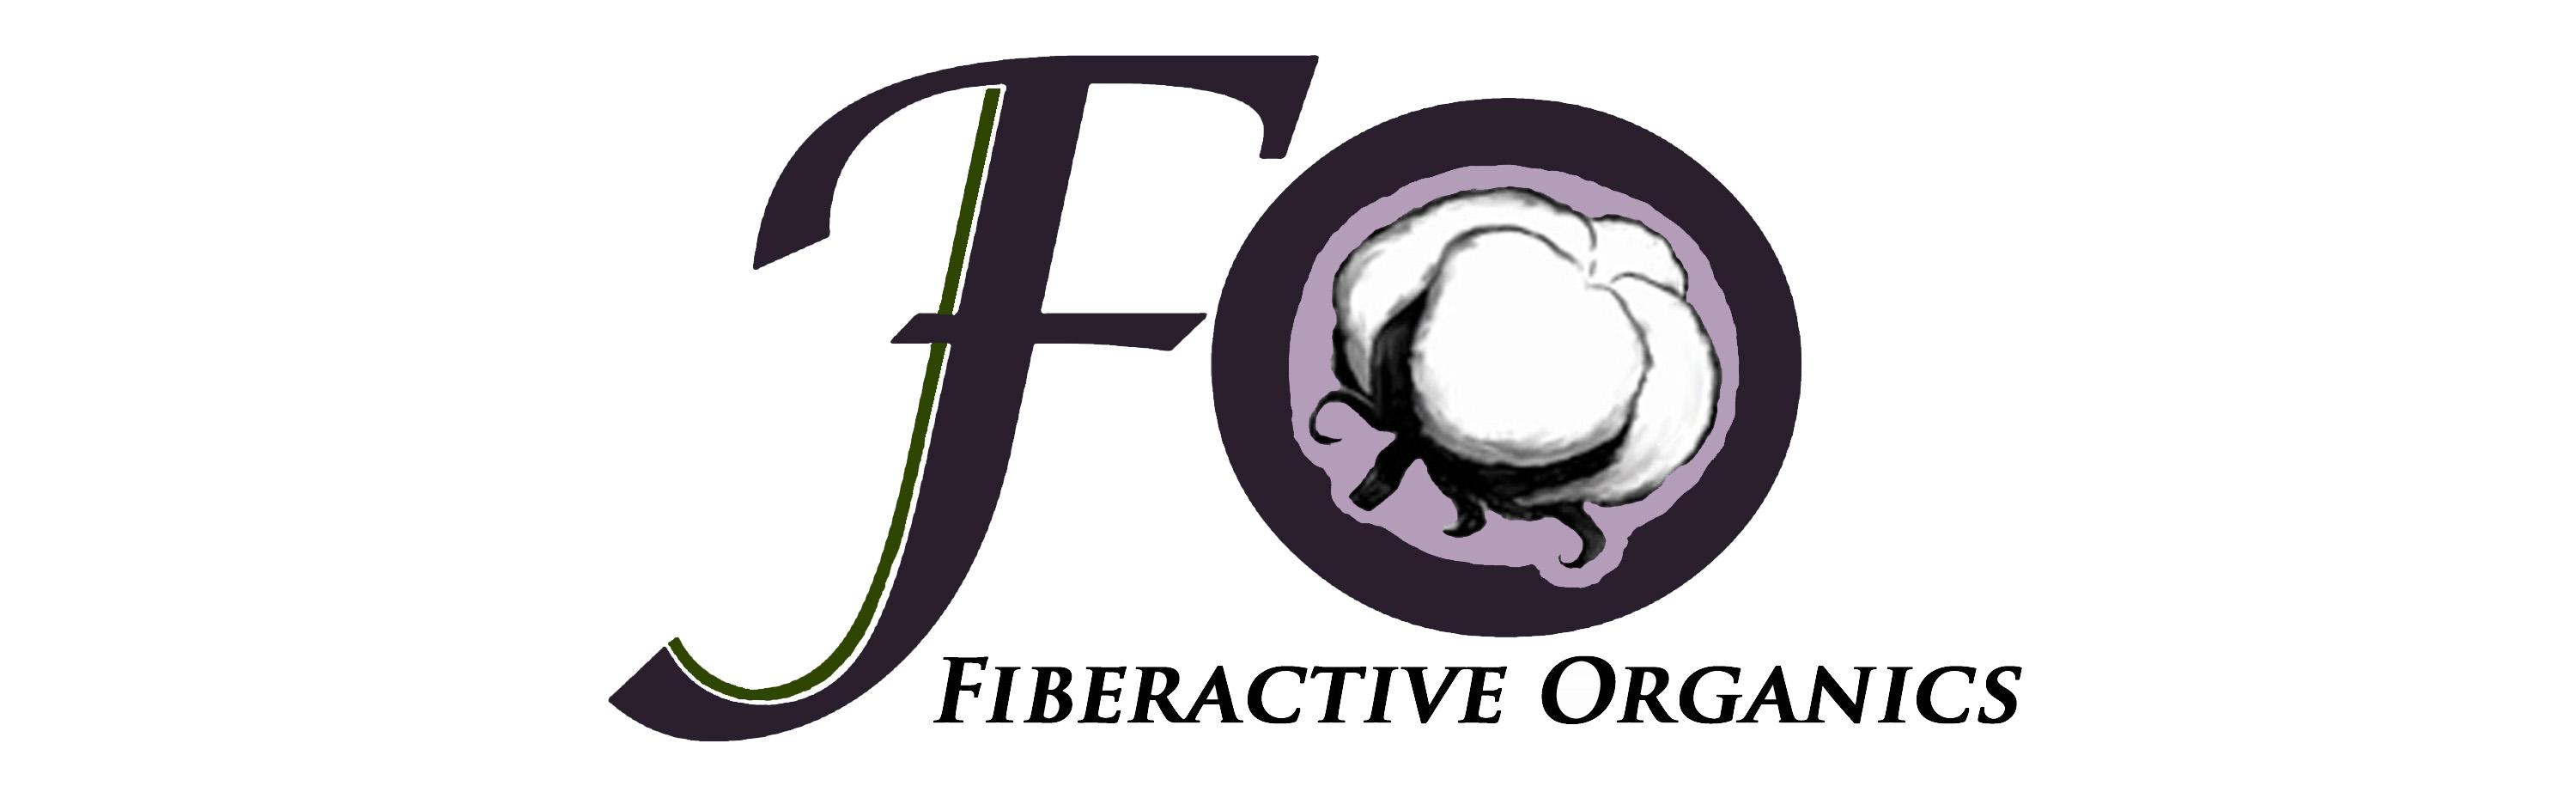 Fiberactive Organics, LLC